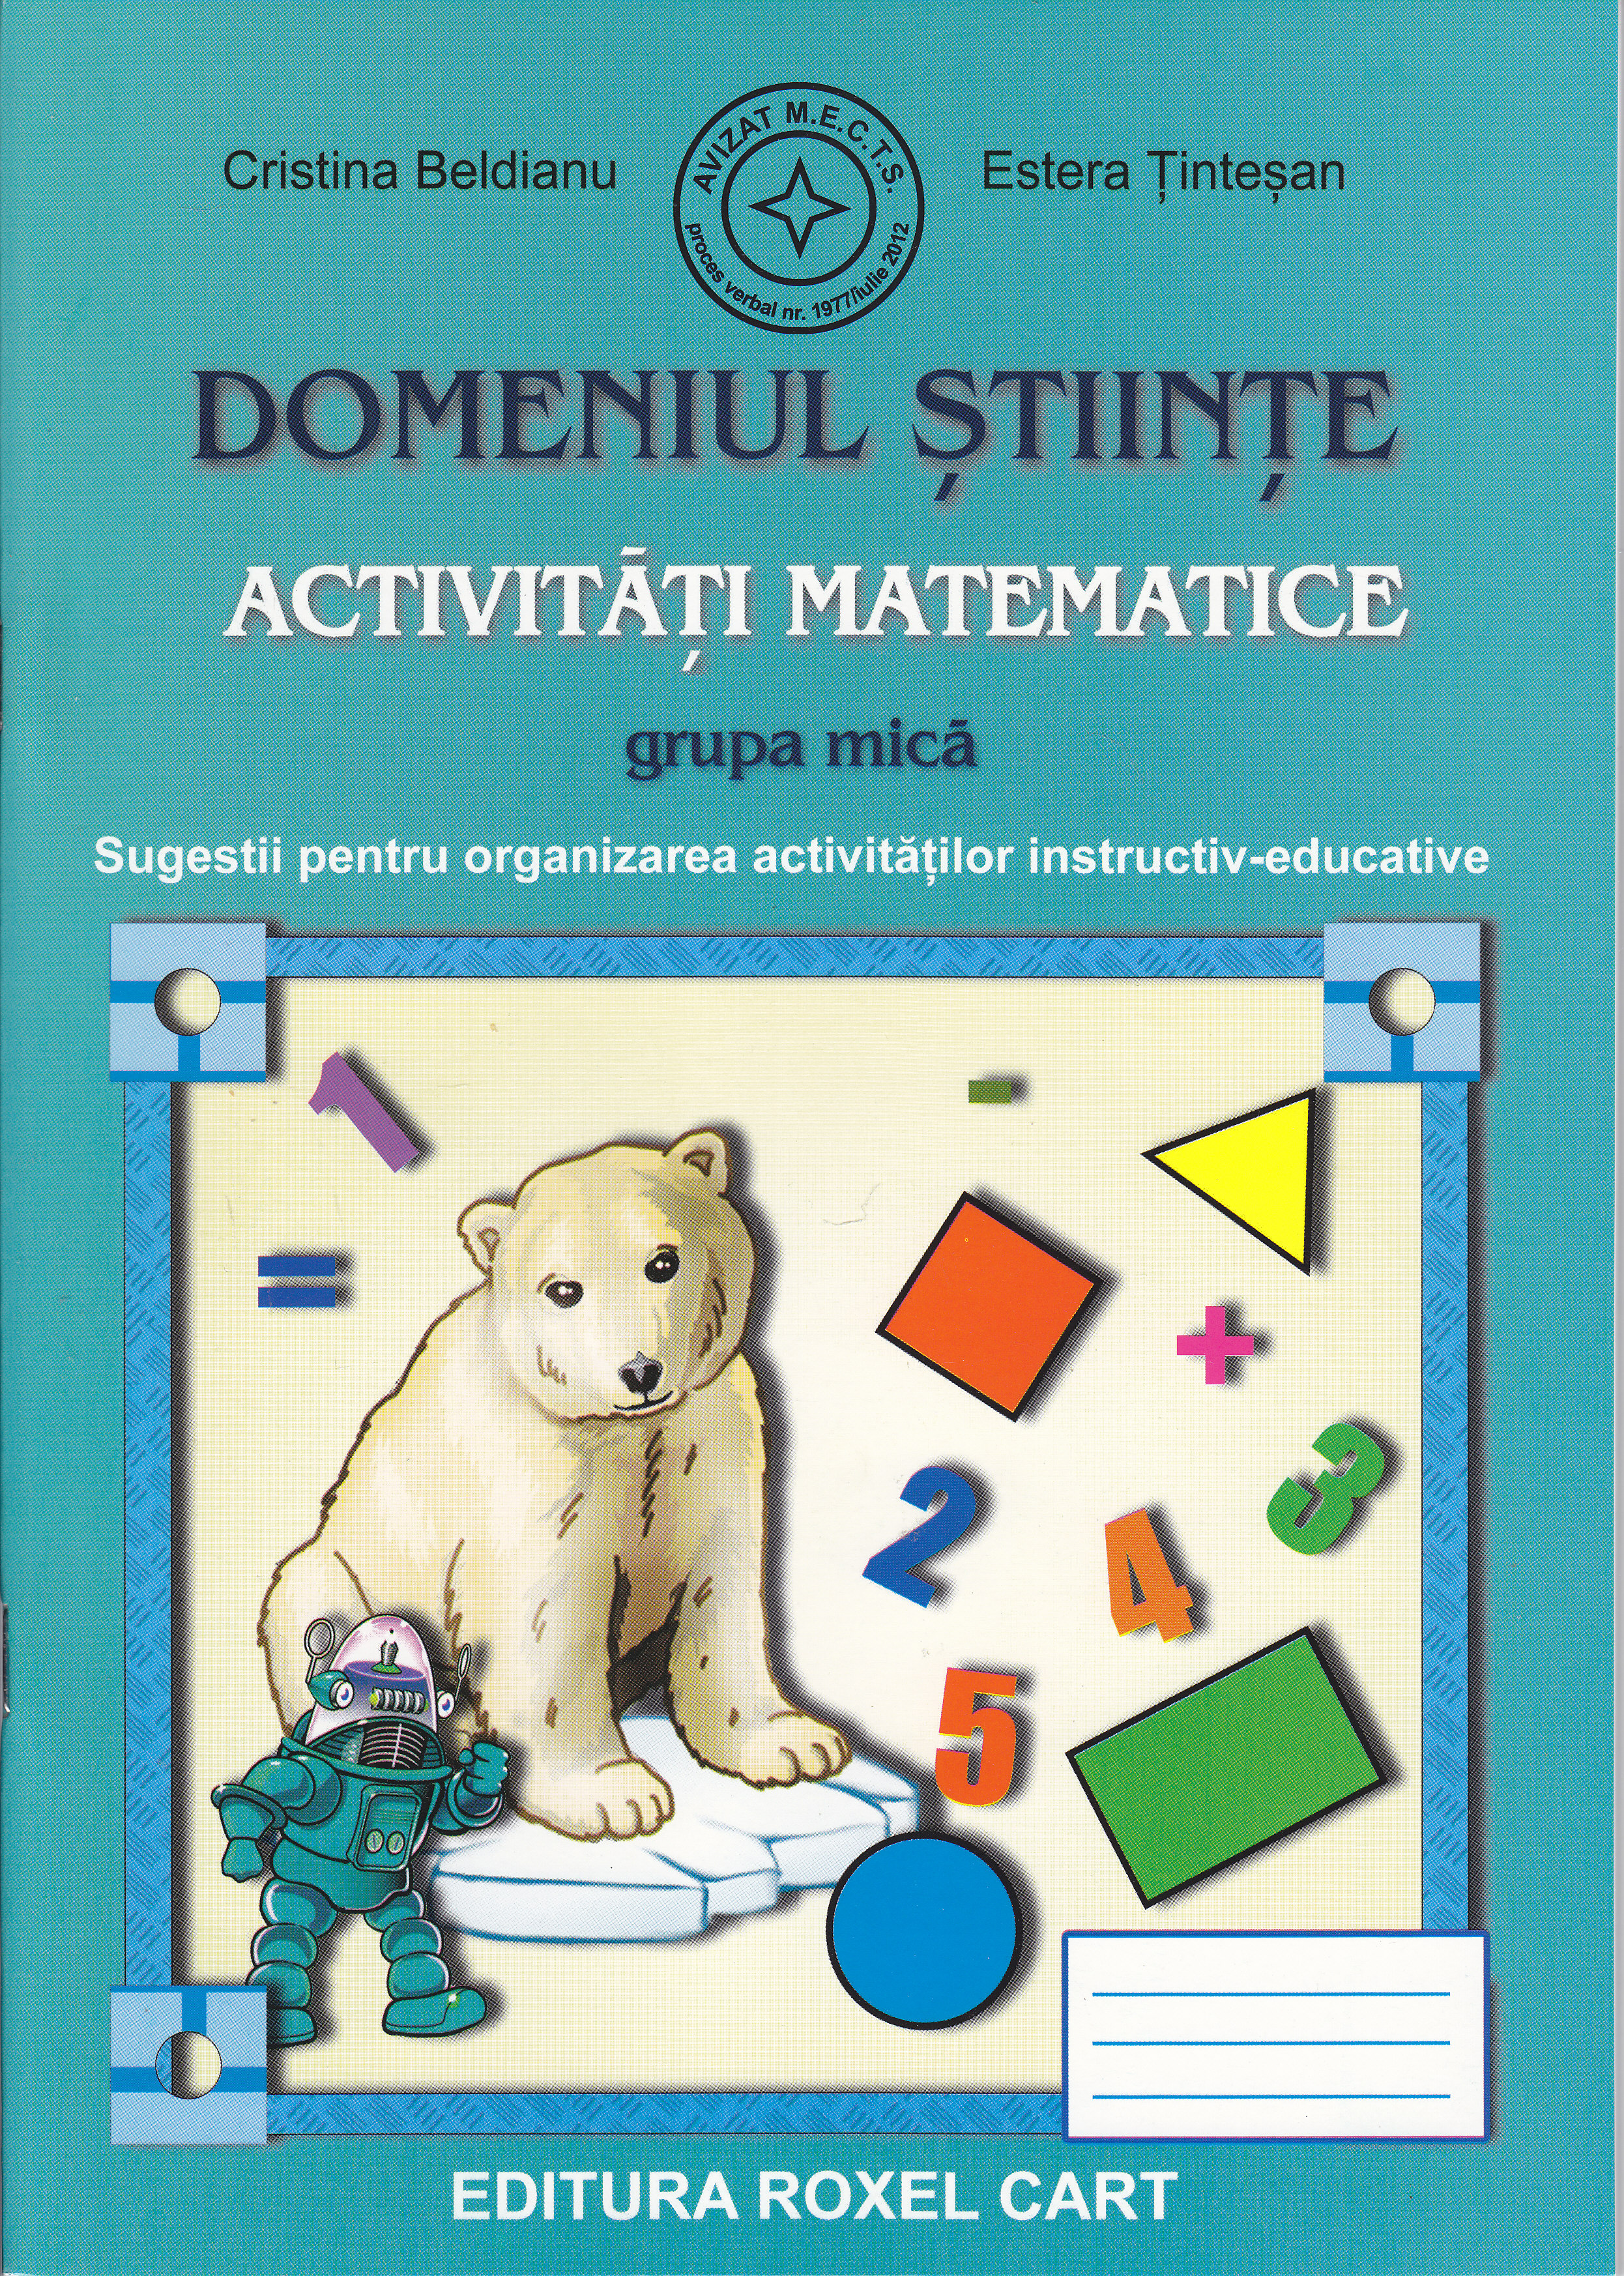 Domeniul stiinte Activitati matematice grupa mica - Cristina Beldianu, Estera Tintesan